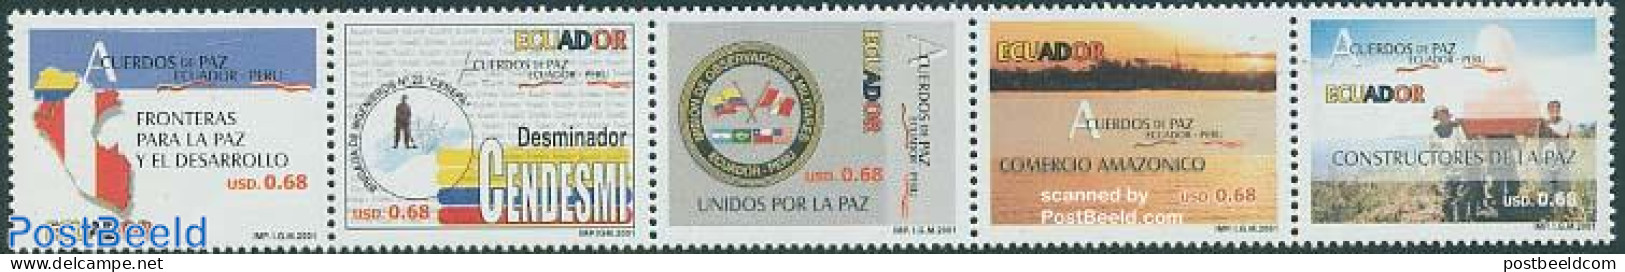 Ecuador 2001 Peace Treaty With Peru 5v [::::], Mint NH - Ecuador